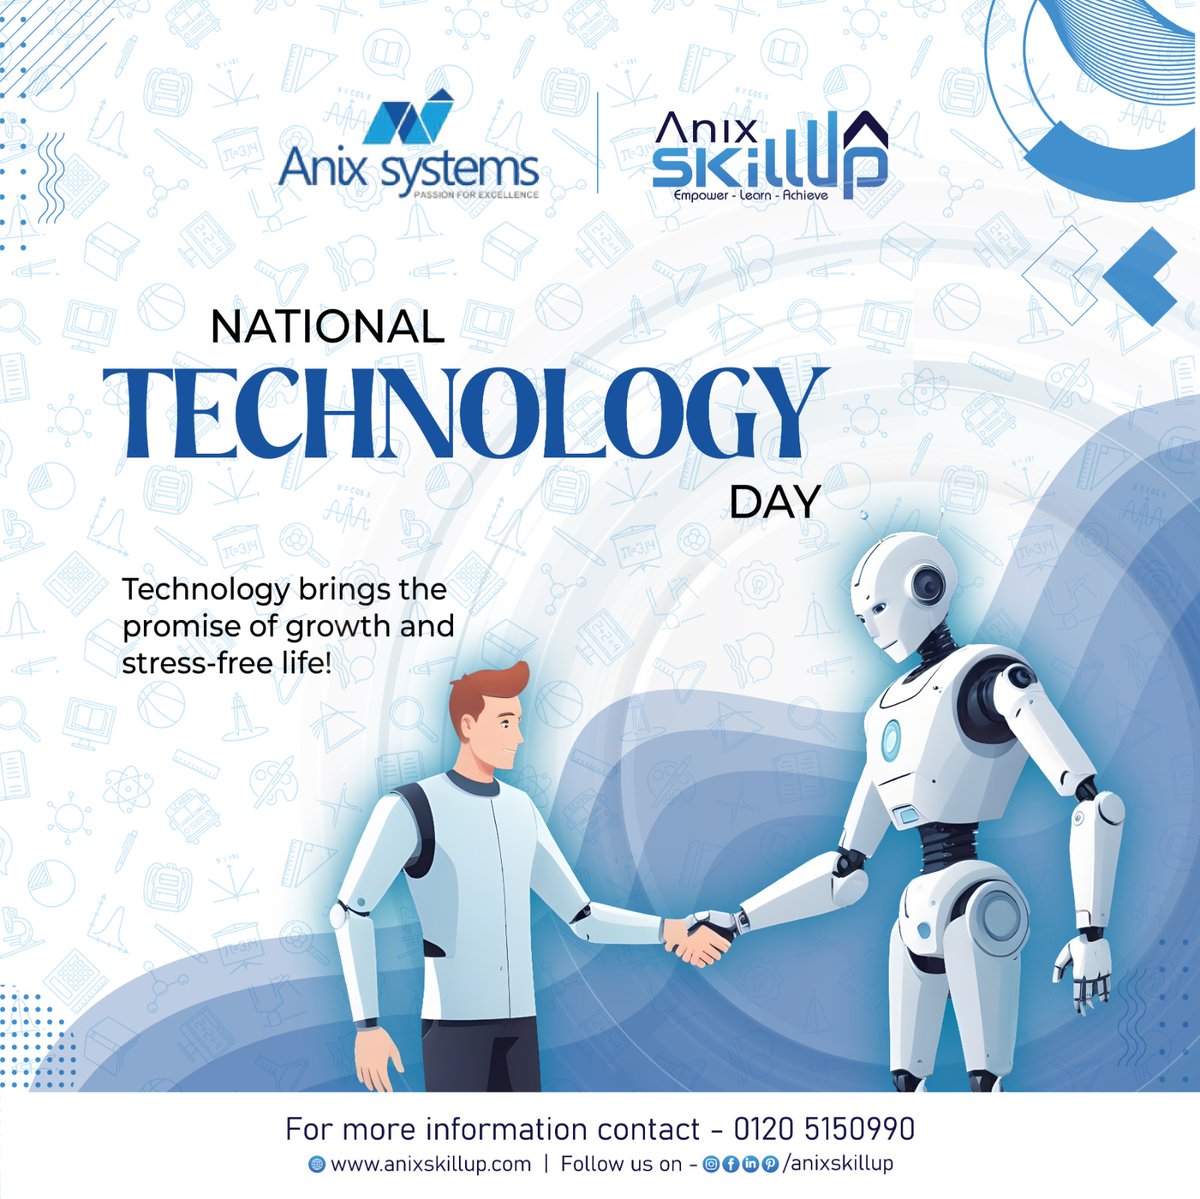 𝐔𝐧𝐥𝐨𝐜𝐤𝐢𝐧𝐠 𝐓𝐨𝐦𝐨𝐫𝐫𝐨𝐰'𝐬 𝐏𝐨𝐬𝐬𝐢𝐛𝐢𝐥𝐢𝐭𝐢𝐞𝐬: 𝐖𝐢𝐬𝐡𝐢𝐧𝐠 𝐲𝐨𝐮 𝐚 𝐜𝐮𝐭𝐭𝐢𝐧𝐠-𝐞𝐝𝐠𝐞 𝐍𝐚𝐭𝐢𝐨𝐧𝐚𝐥 𝐓𝐞𝐜𝐡𝐧𝐨𝐥𝐨𝐠𝐲 𝐃𝐚𝐲 𝐟𝐫𝐨𝐦 𝗔𝗻𝗶𝘅 𝗦𝗸𝗶𝗹𝗹𝗨𝗽! 💻💡
#NationalTechnologyDay #InnovateWithTech #DigitalInnovation #anixskillup